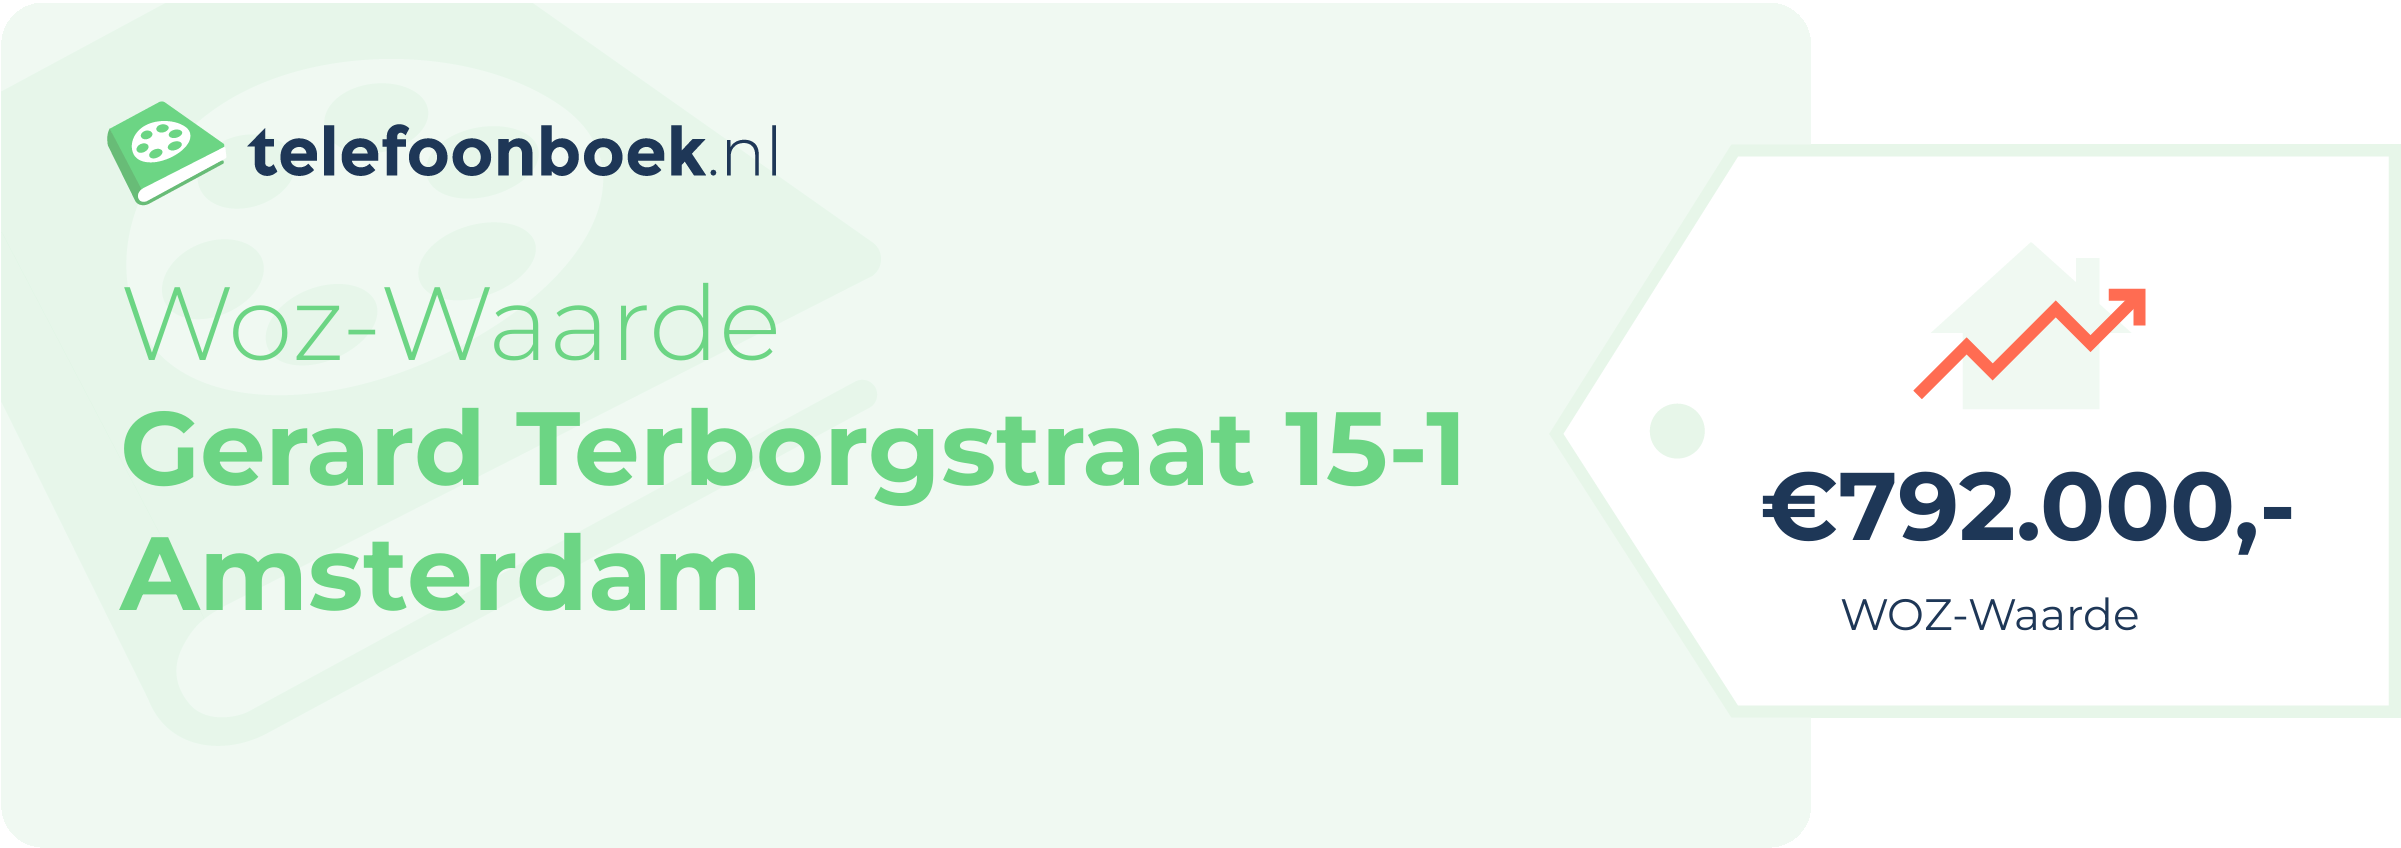 WOZ-waarde Gerard Terborgstraat 15-1 Amsterdam